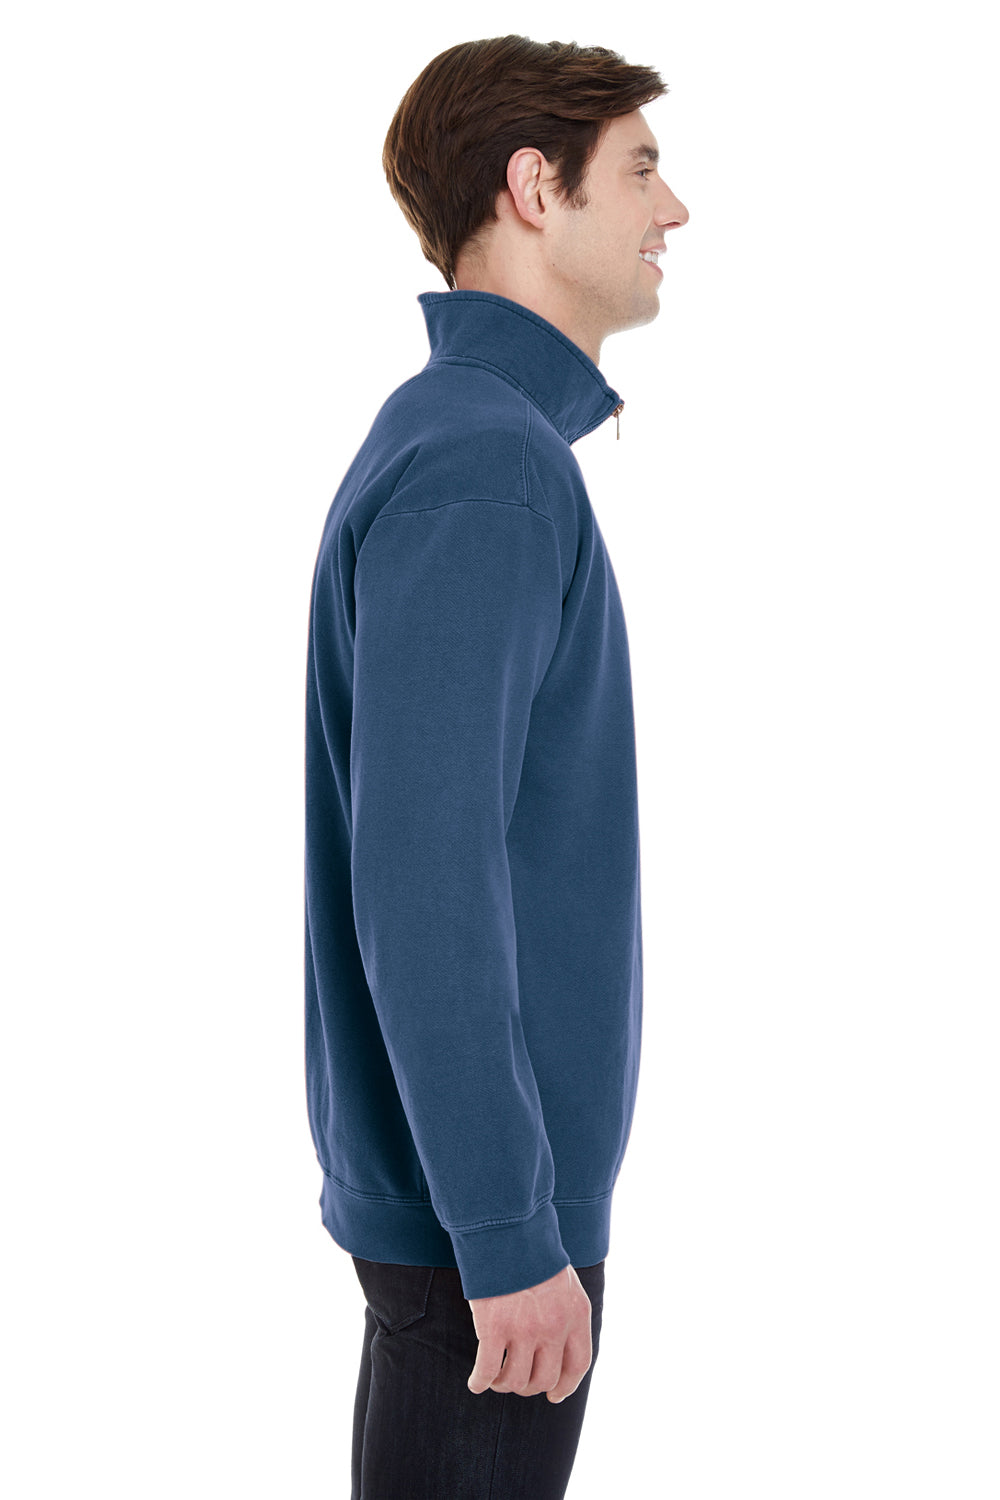 Comfort Colors 1580 Mens 1/4 Zip Sweatshirt Navy Blue Side